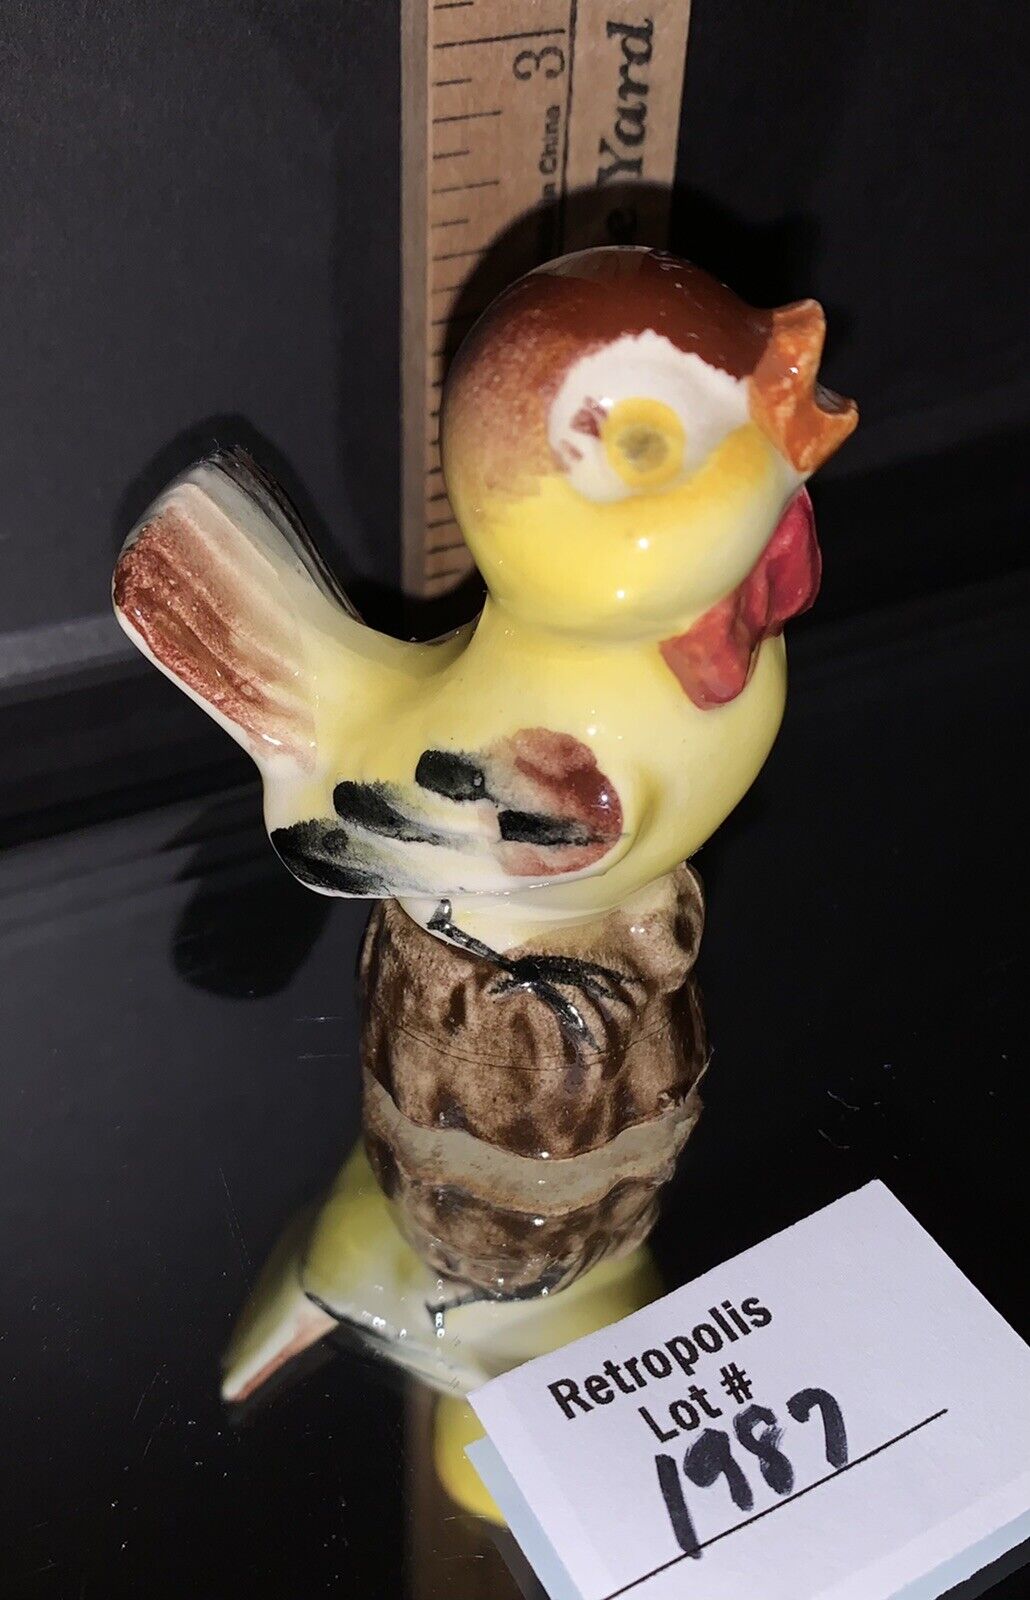 VTG Hand Painted Ceramic Glossy Yellow SINGING Baby Bird Figurine